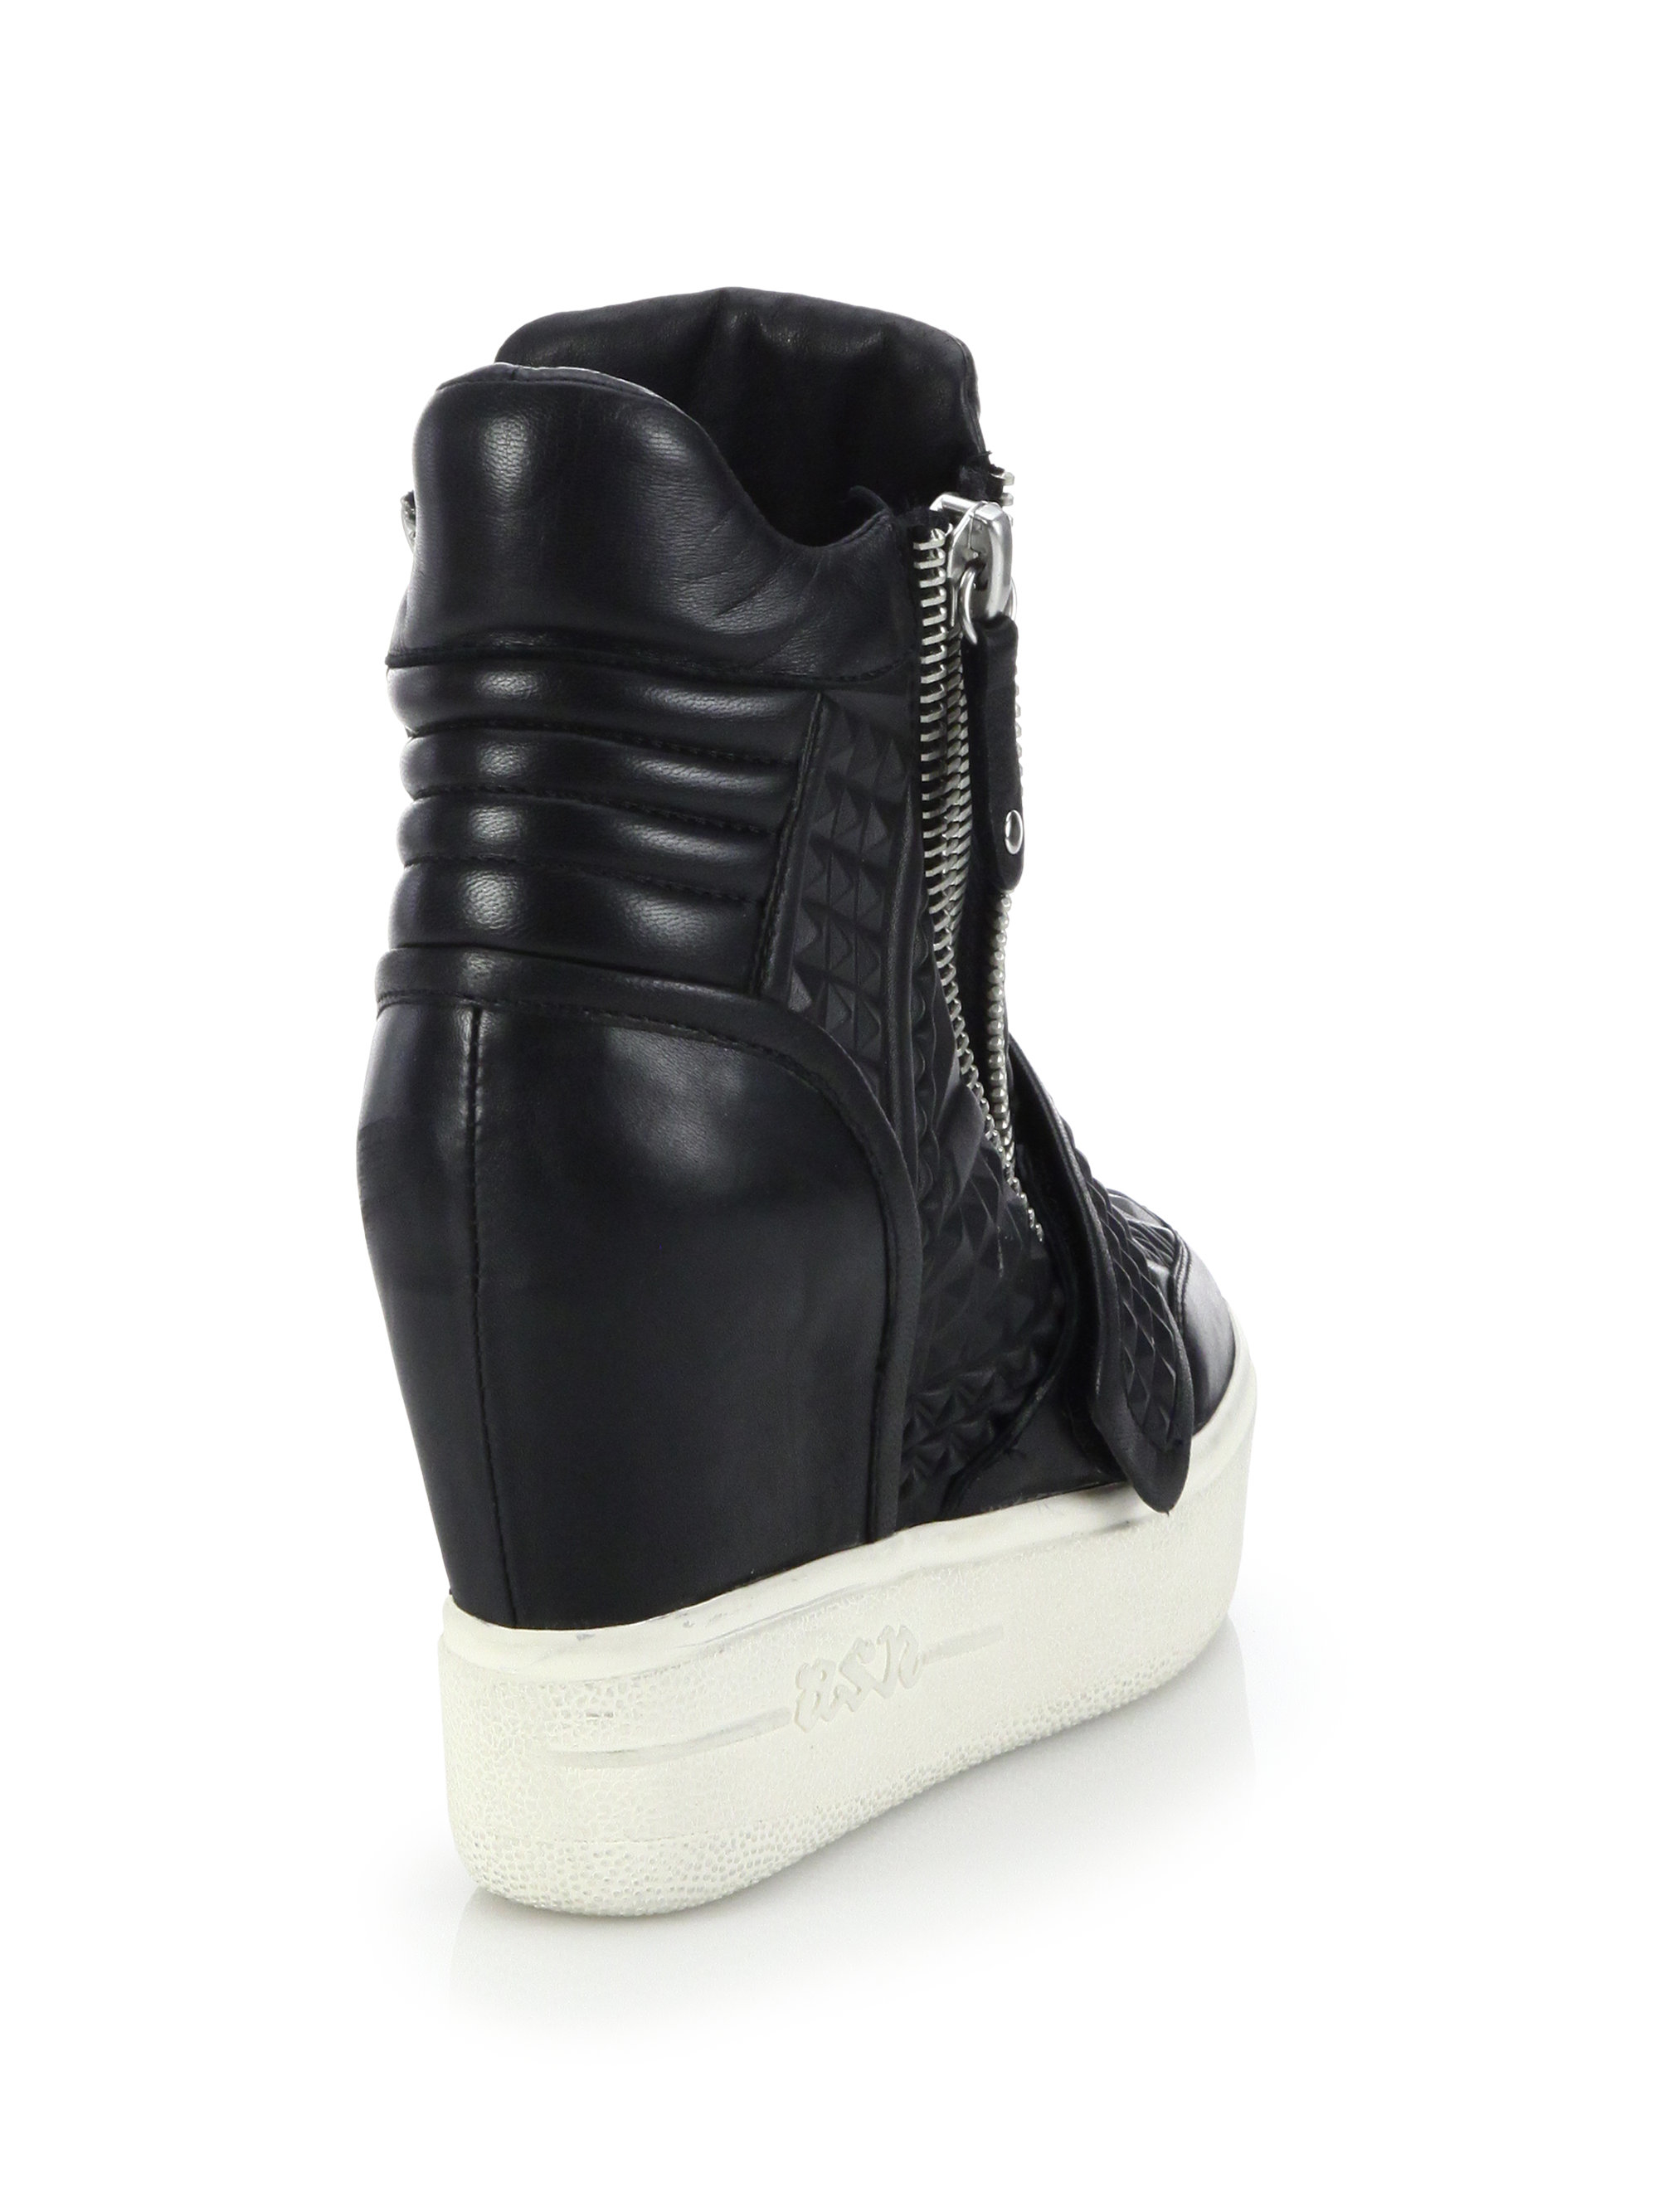 Ash Embossed Leather Wedge Sneakers in Black - Lyst